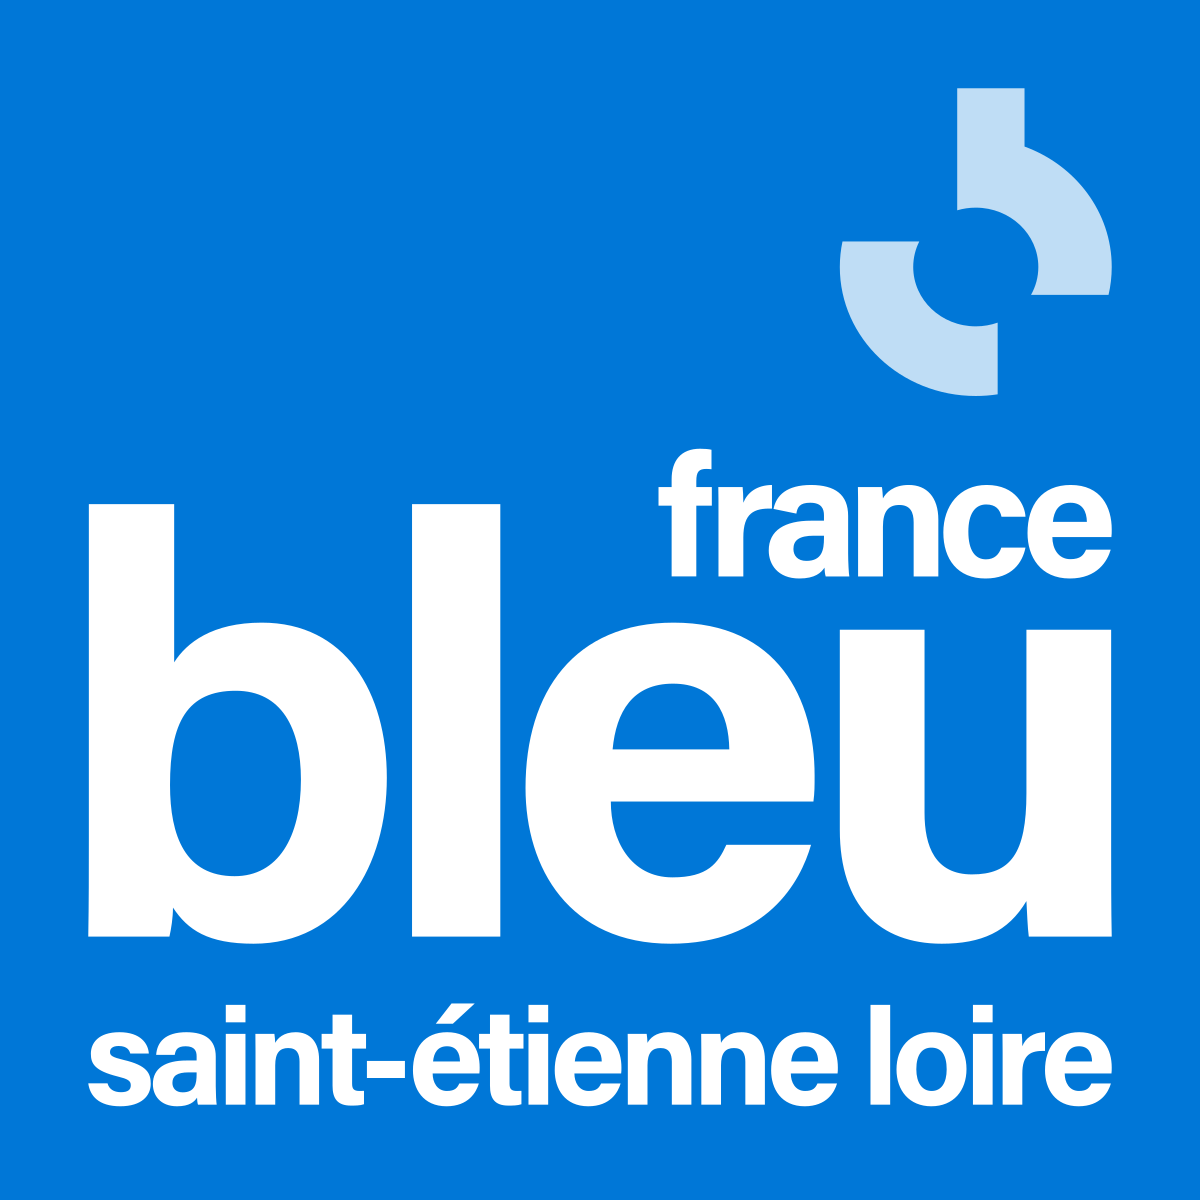 France Bleu St Etienne Loire